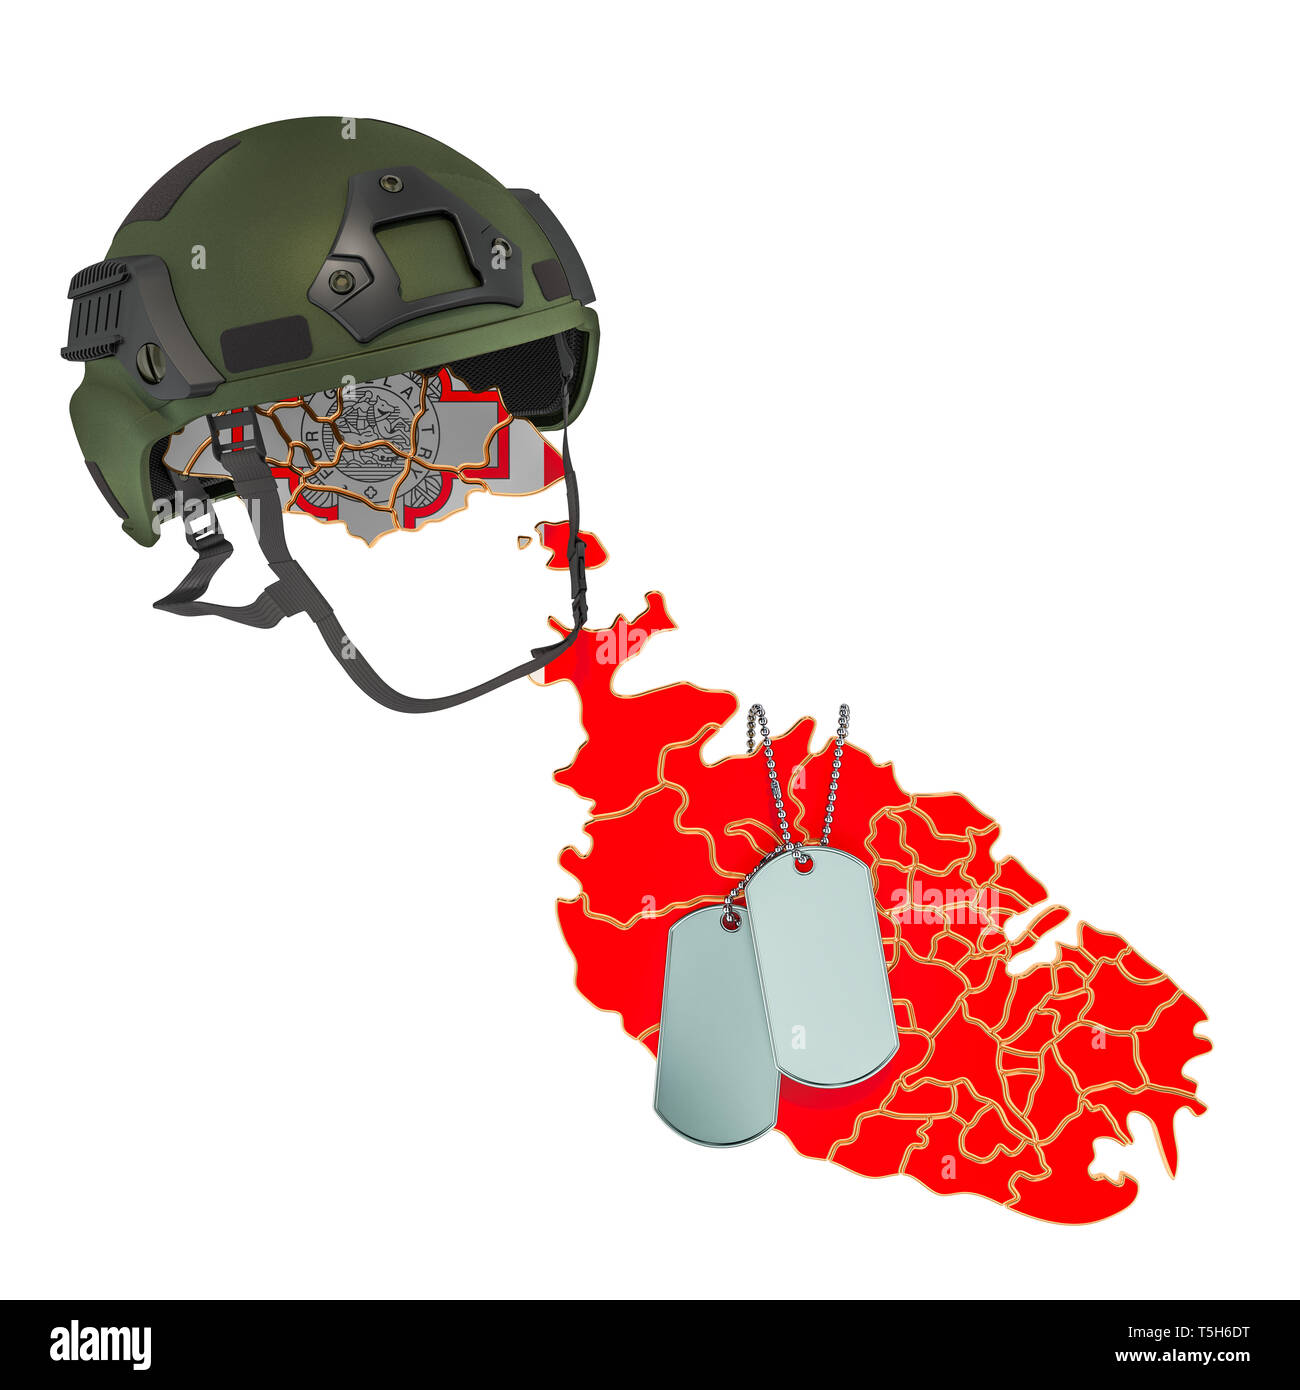 Militärische Gewalt von Malta, Armee oder Krieg Konzept. 3D-Rendering auf weißem Hintergrund Stockfoto